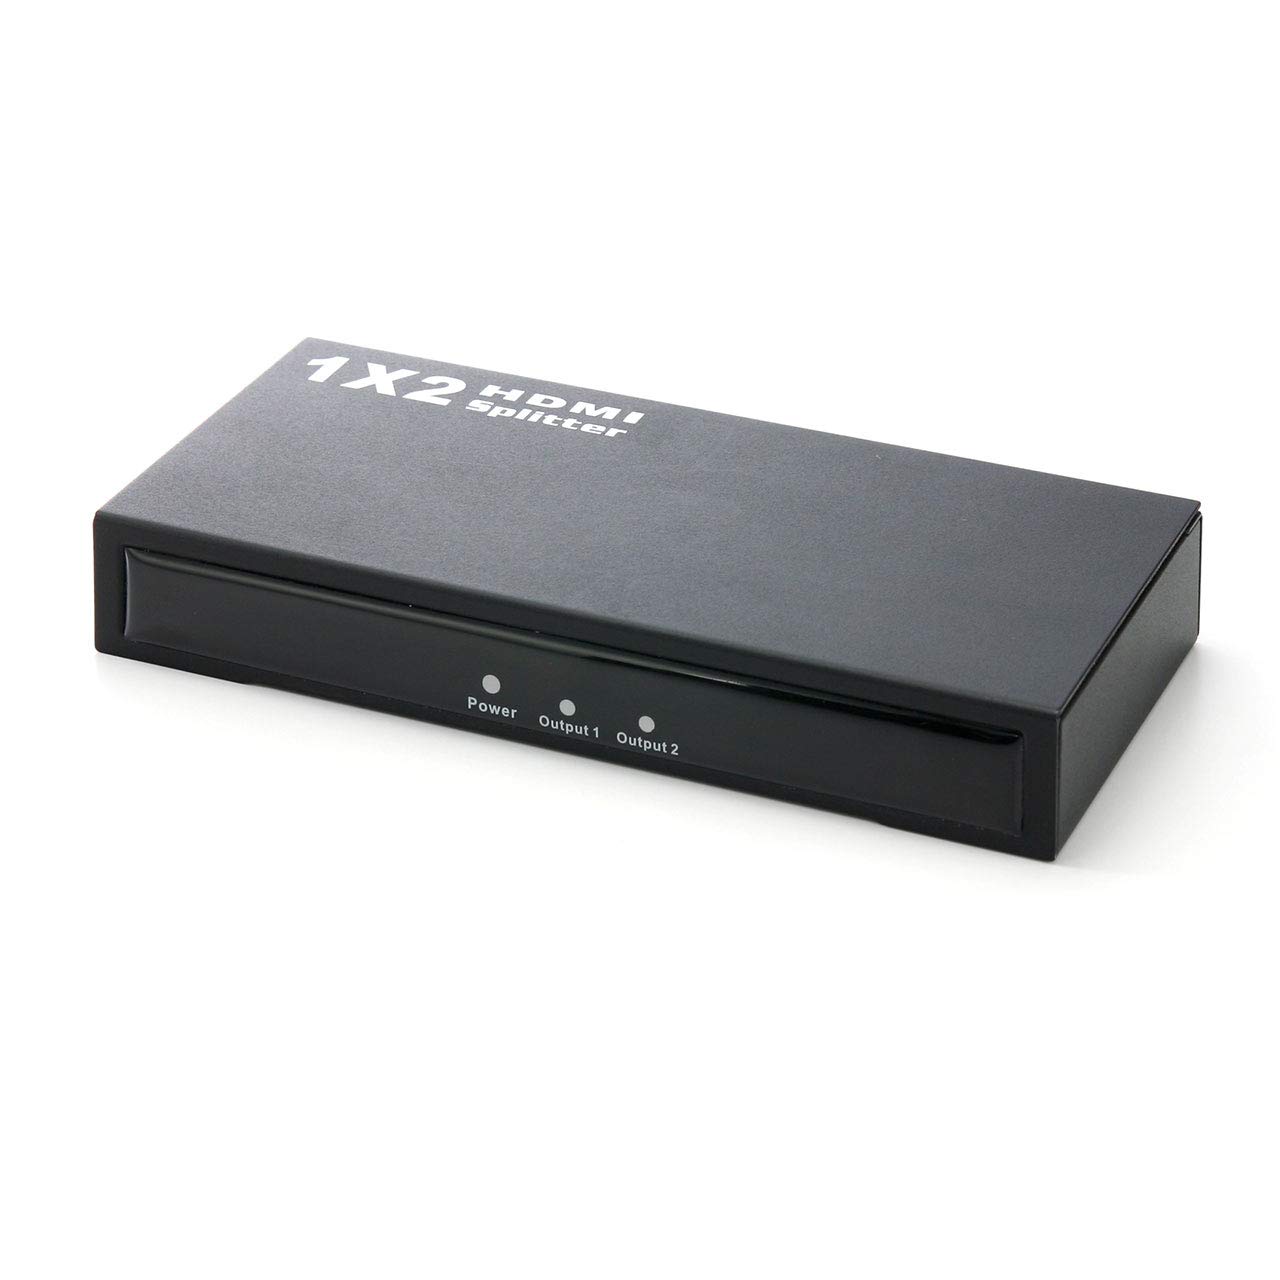 サンワダイレクト HDMI分配器 HDMIスプリッター 1入力 2出力 3D フルハイビジョン 対応 400-VGA003